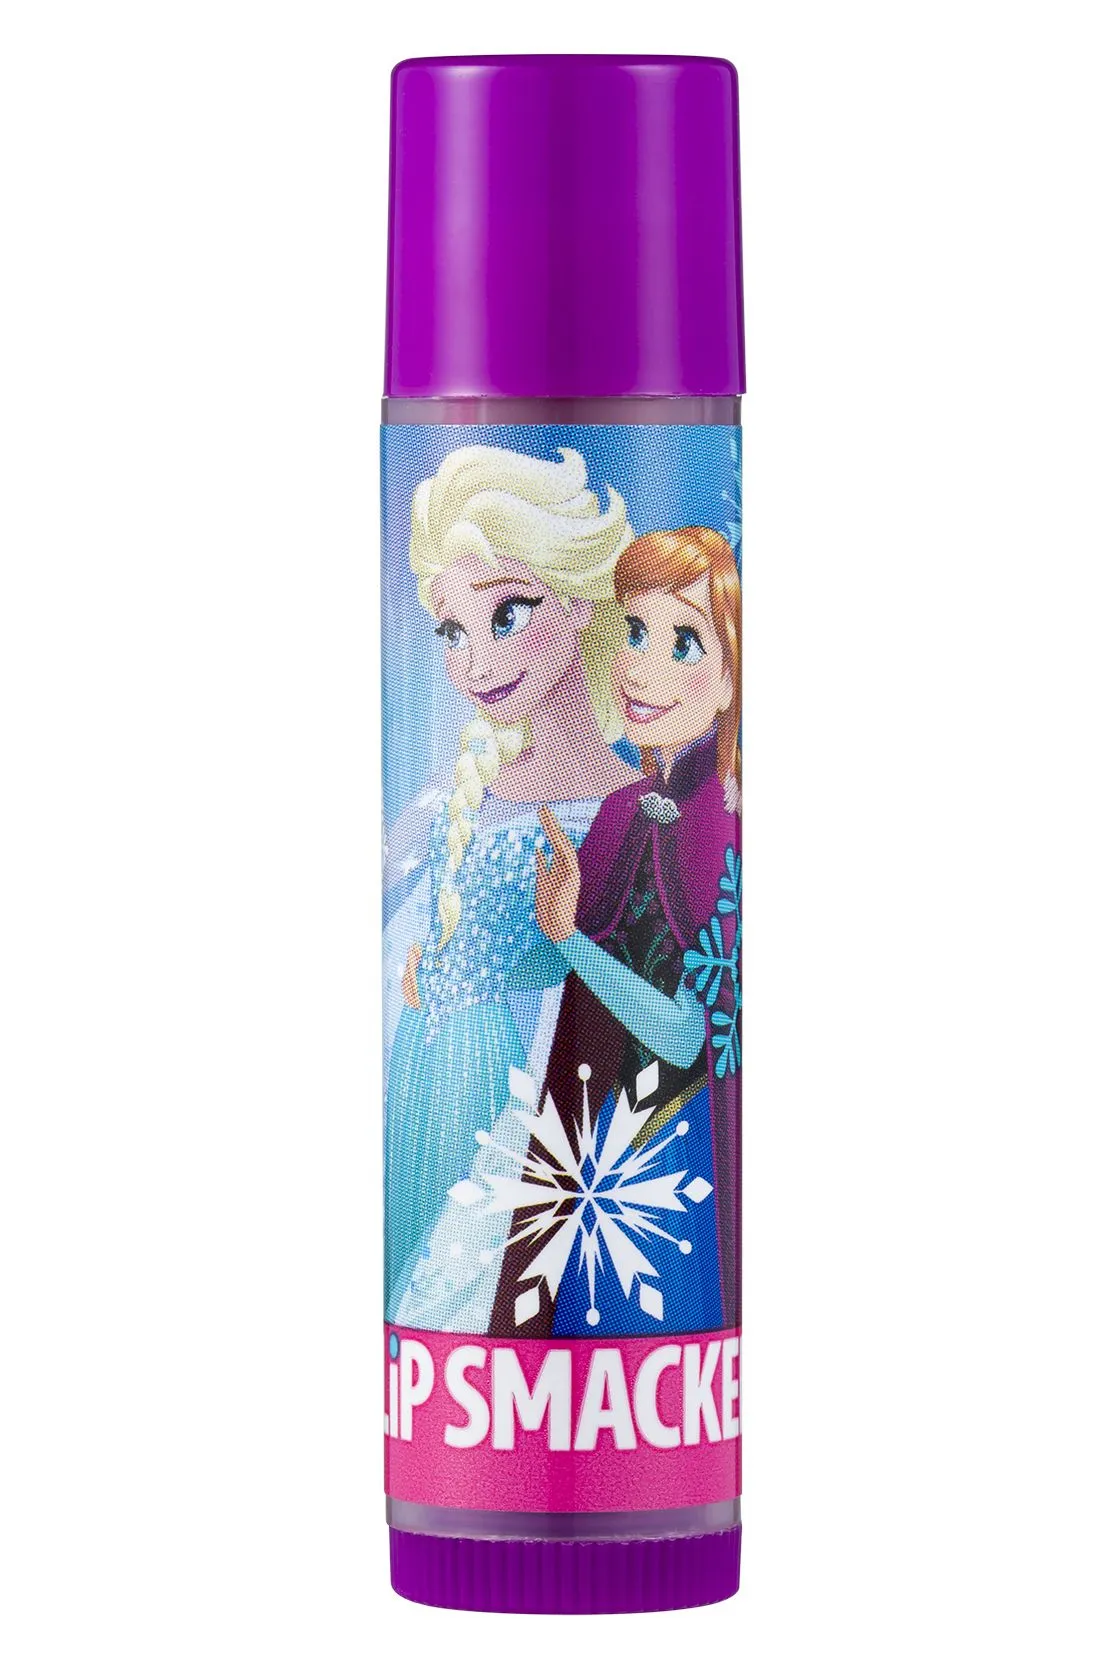 Lip Smacker Disney Frozen Elsa a Anna balzám na rty 4 g